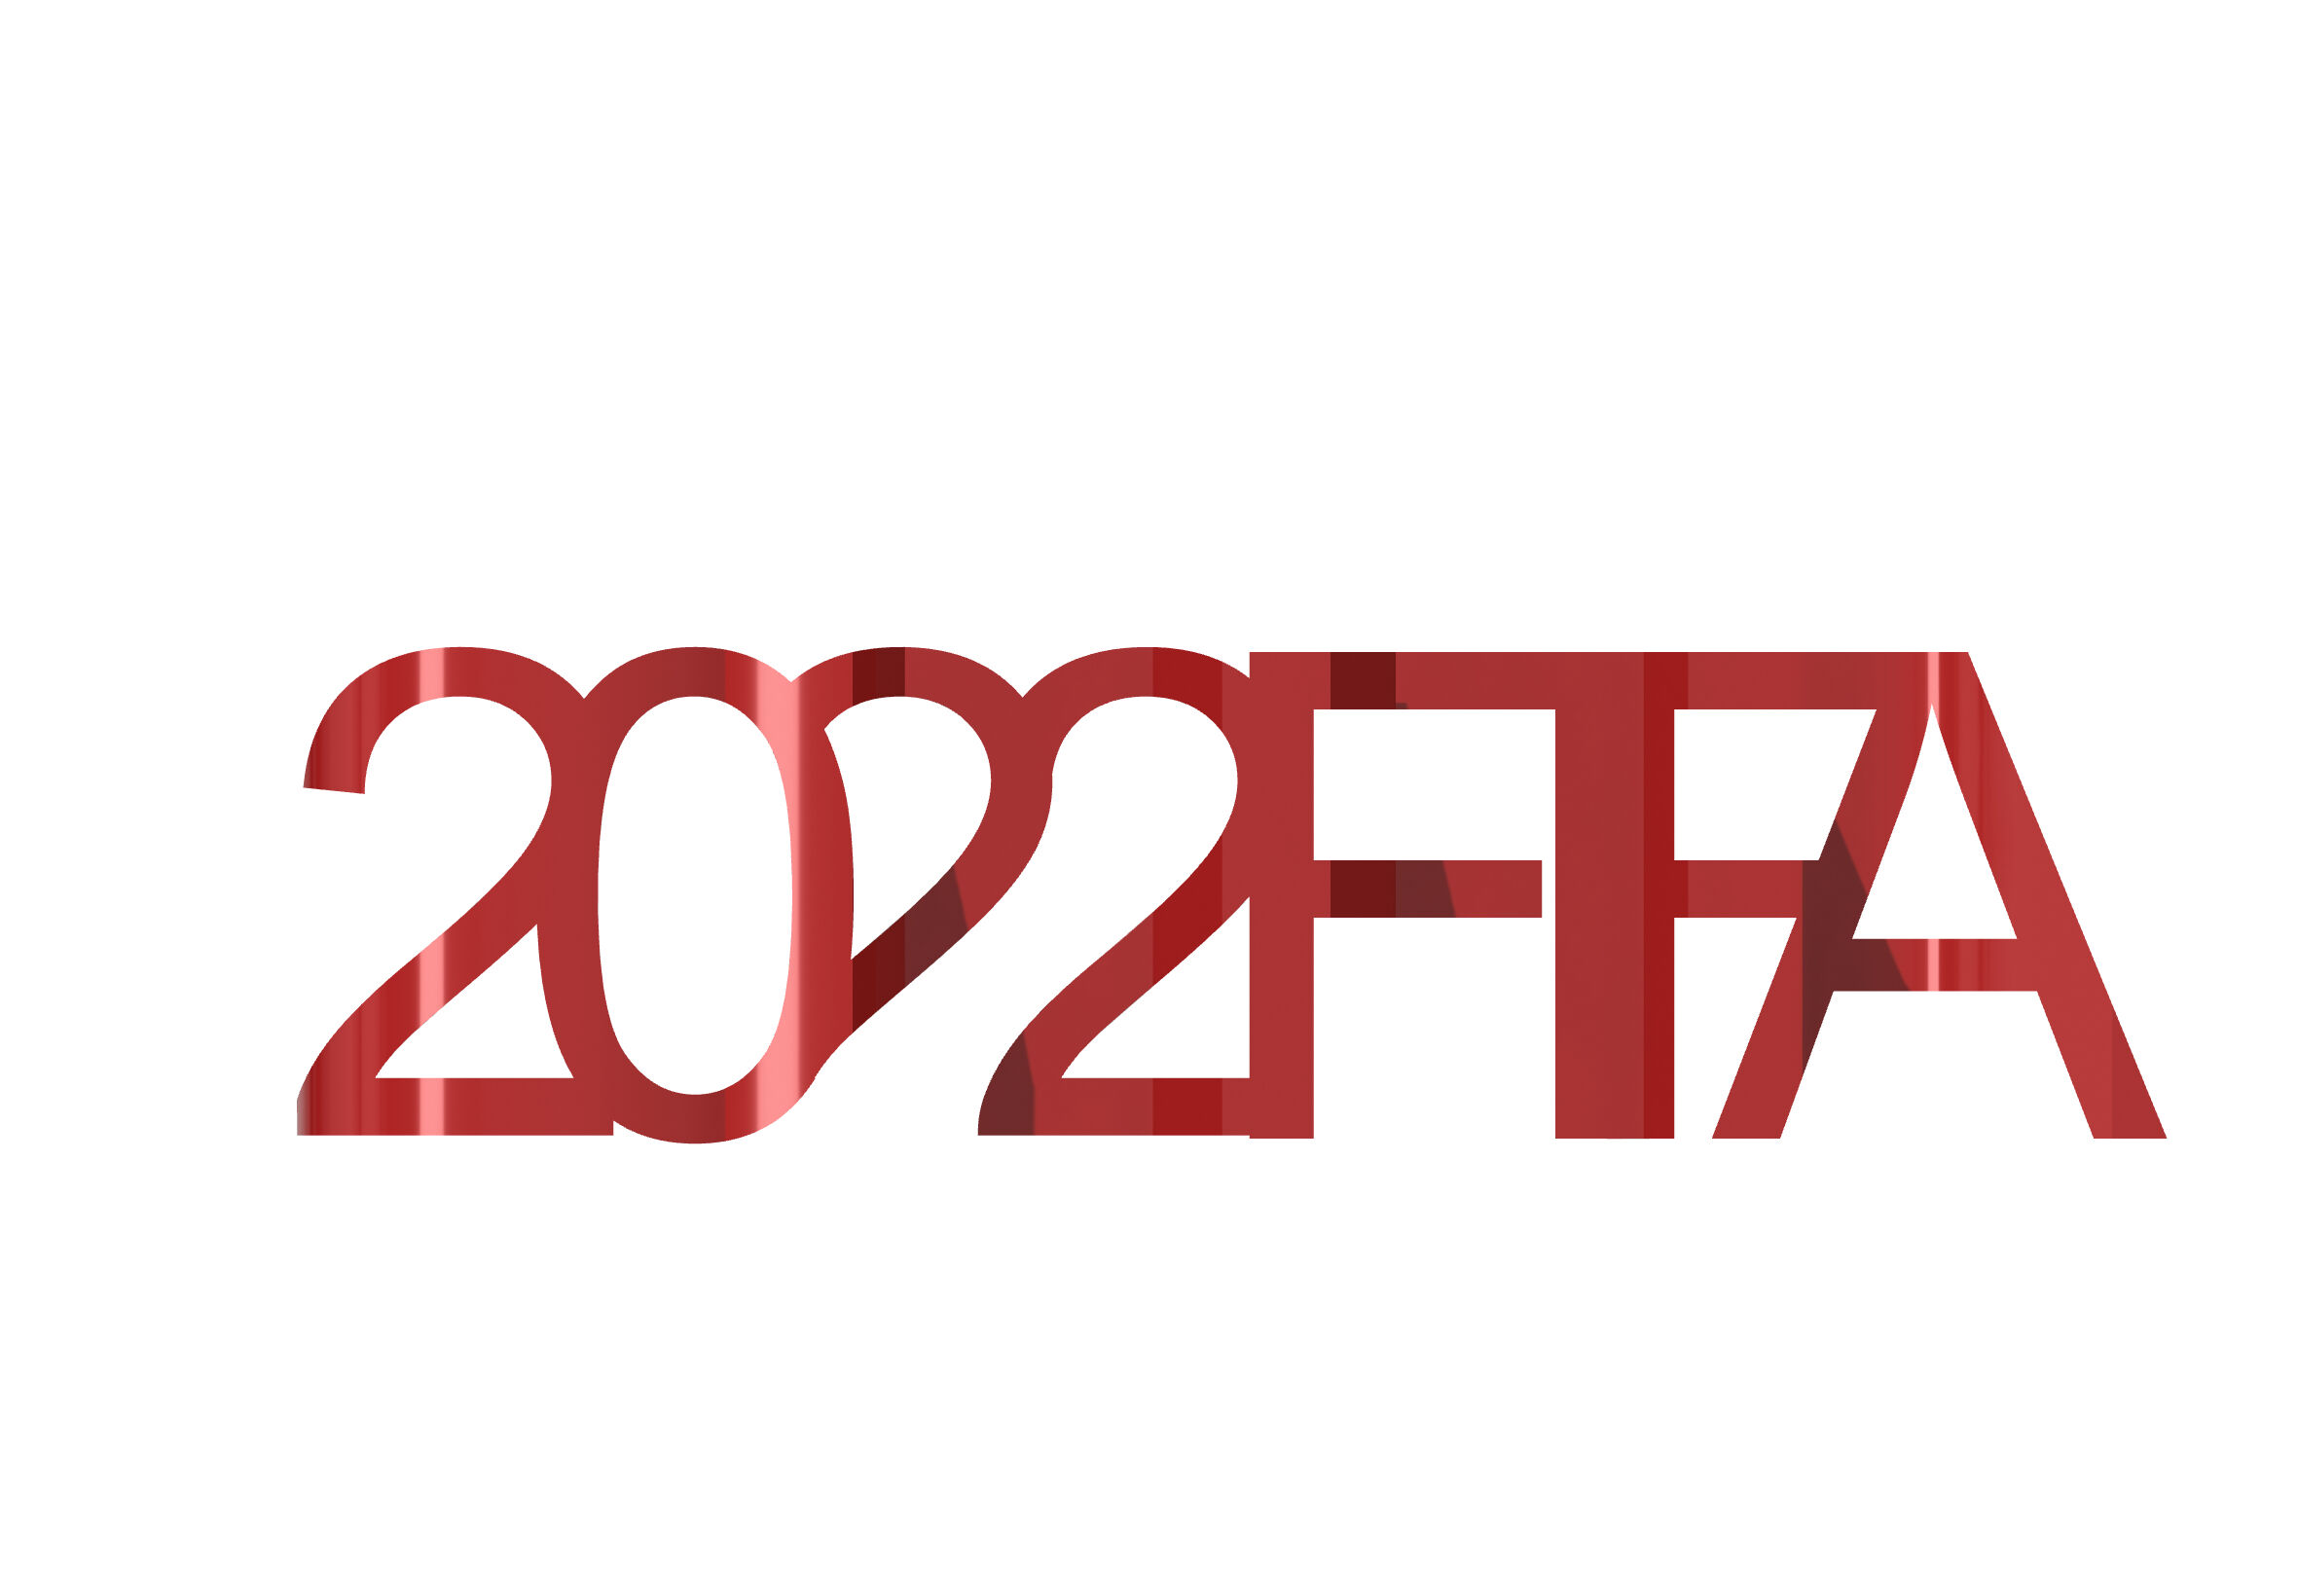 FIFA 2022 Quatar Text Flip